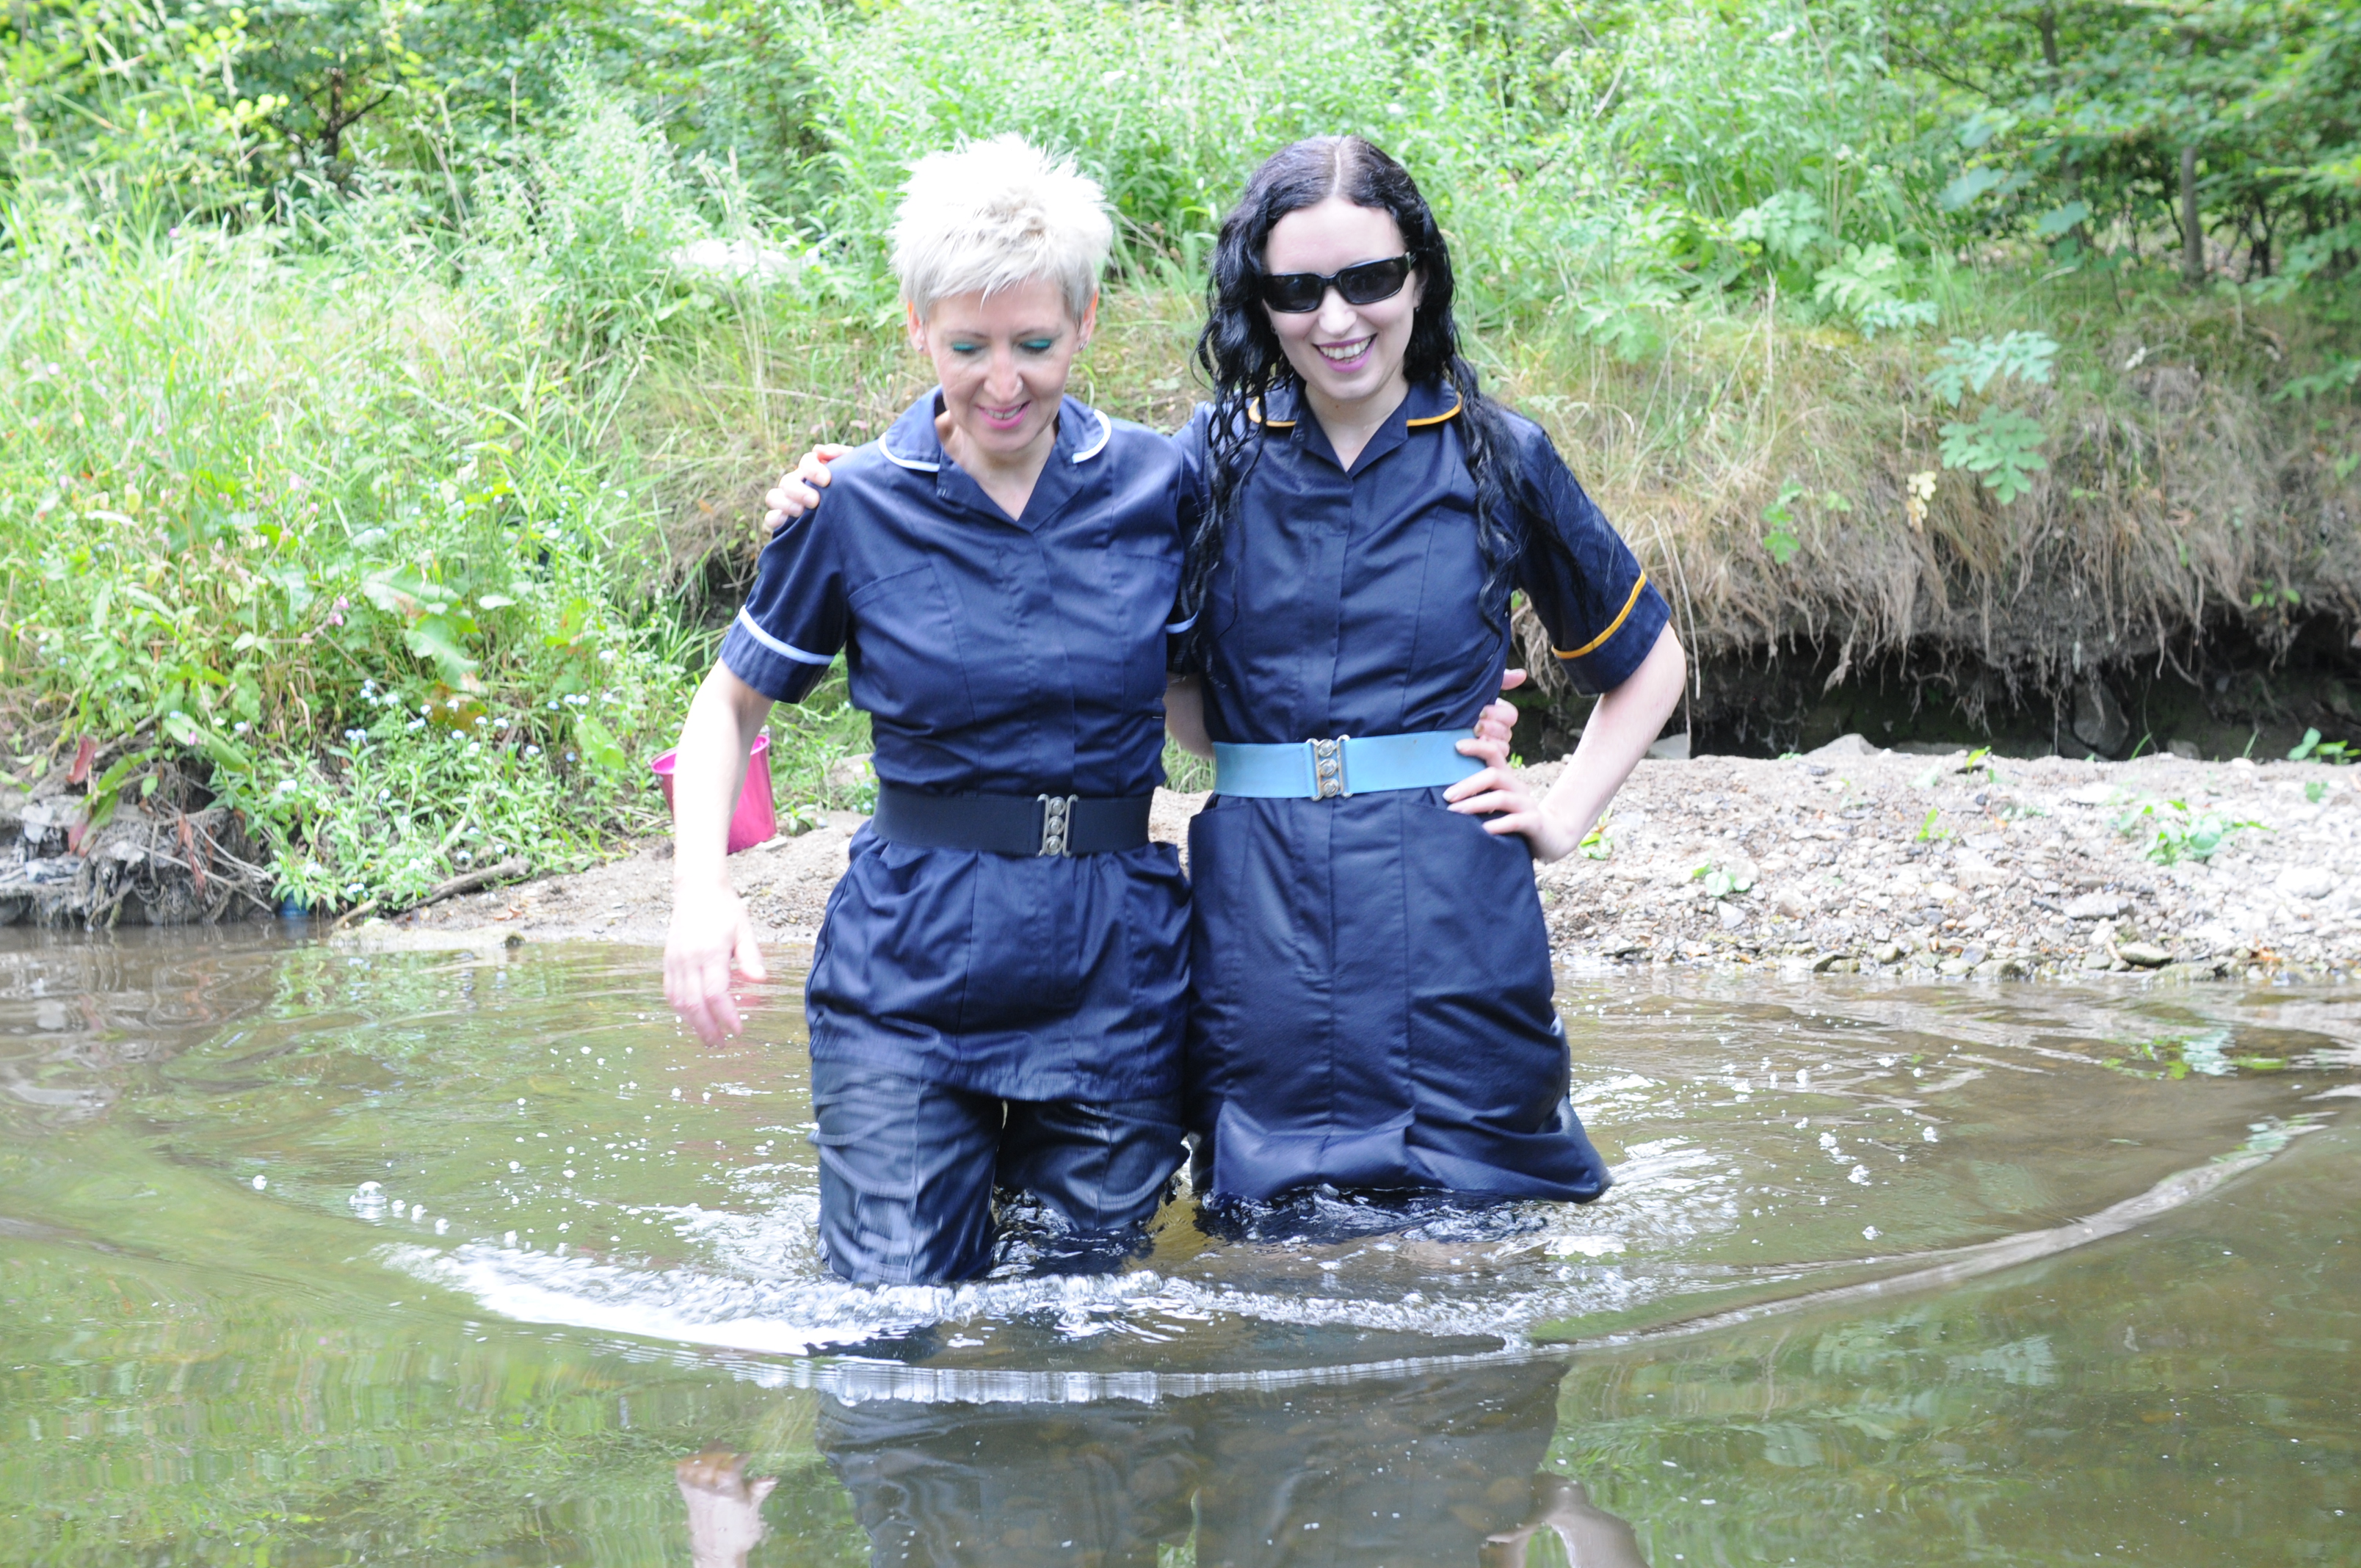 Wwf 77374 Wet Nurses Of 2018 Uniforms In The River Wetlook World Forum